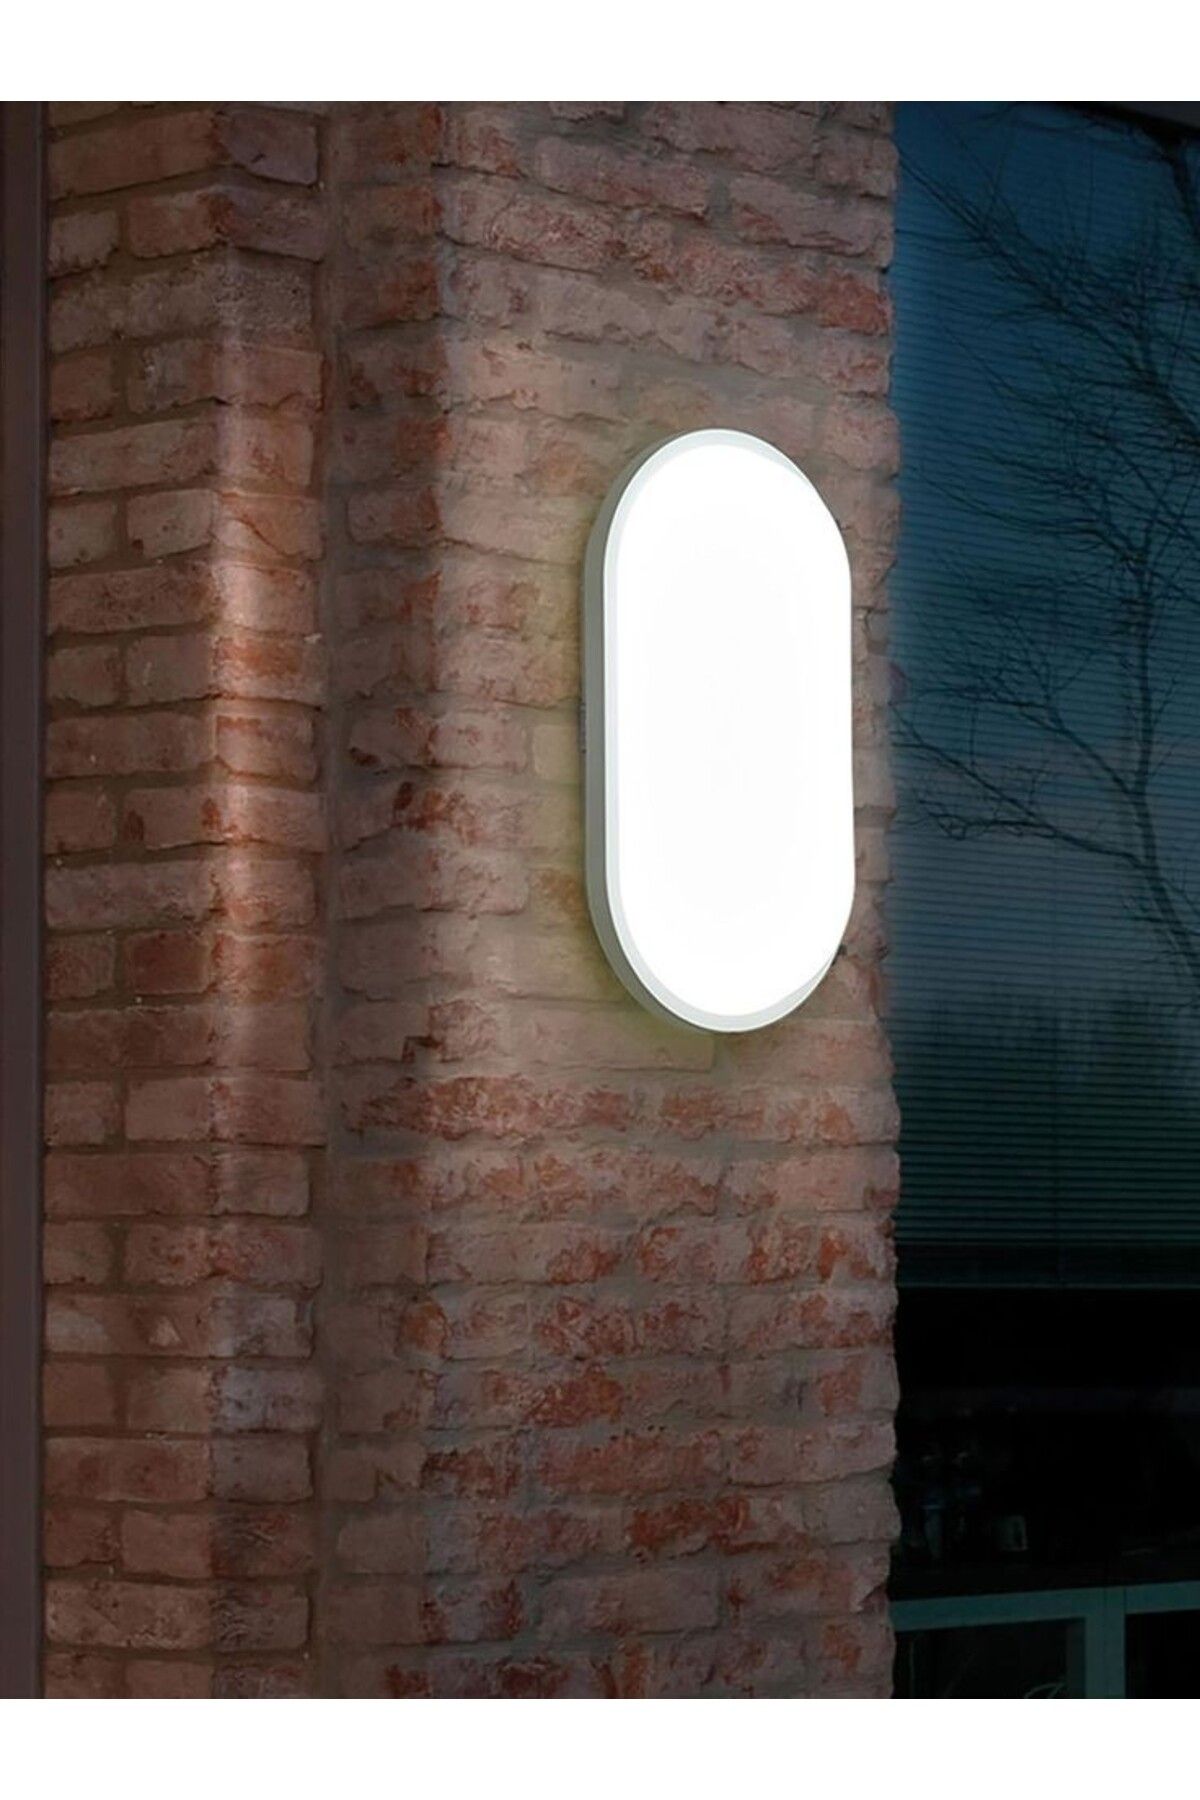 fullreyon Balkon Lambası Teras Lambası Oval Duvar Lambası 20 Watt Beyaz Işık Banyo Lambası Tavan Lambası